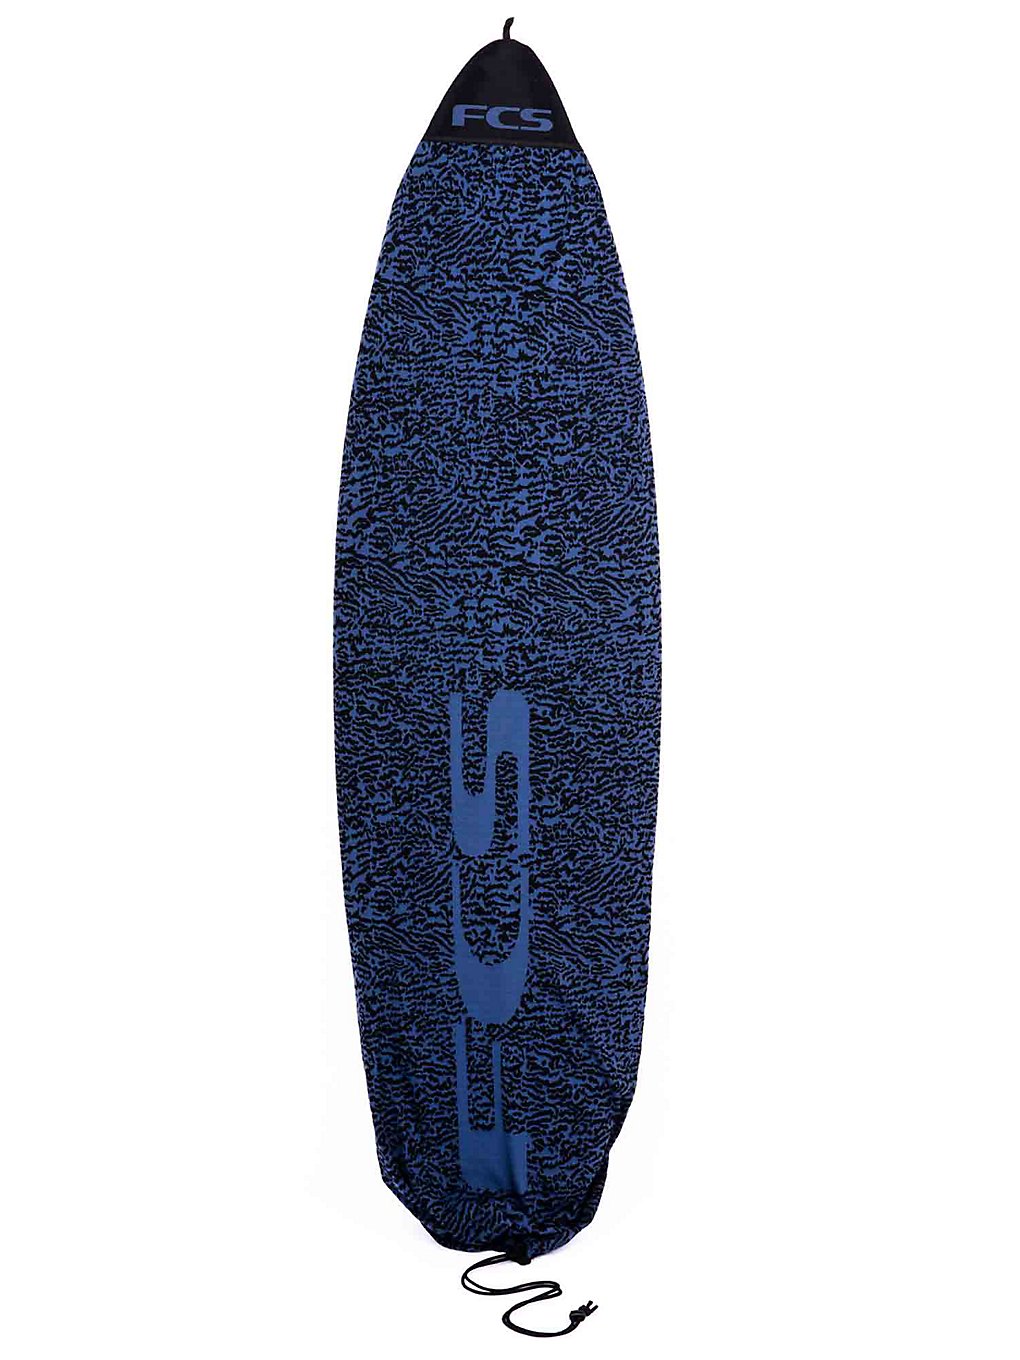 Image of FCS Stretch Fun Board 6'0" Sacca da Surf blu